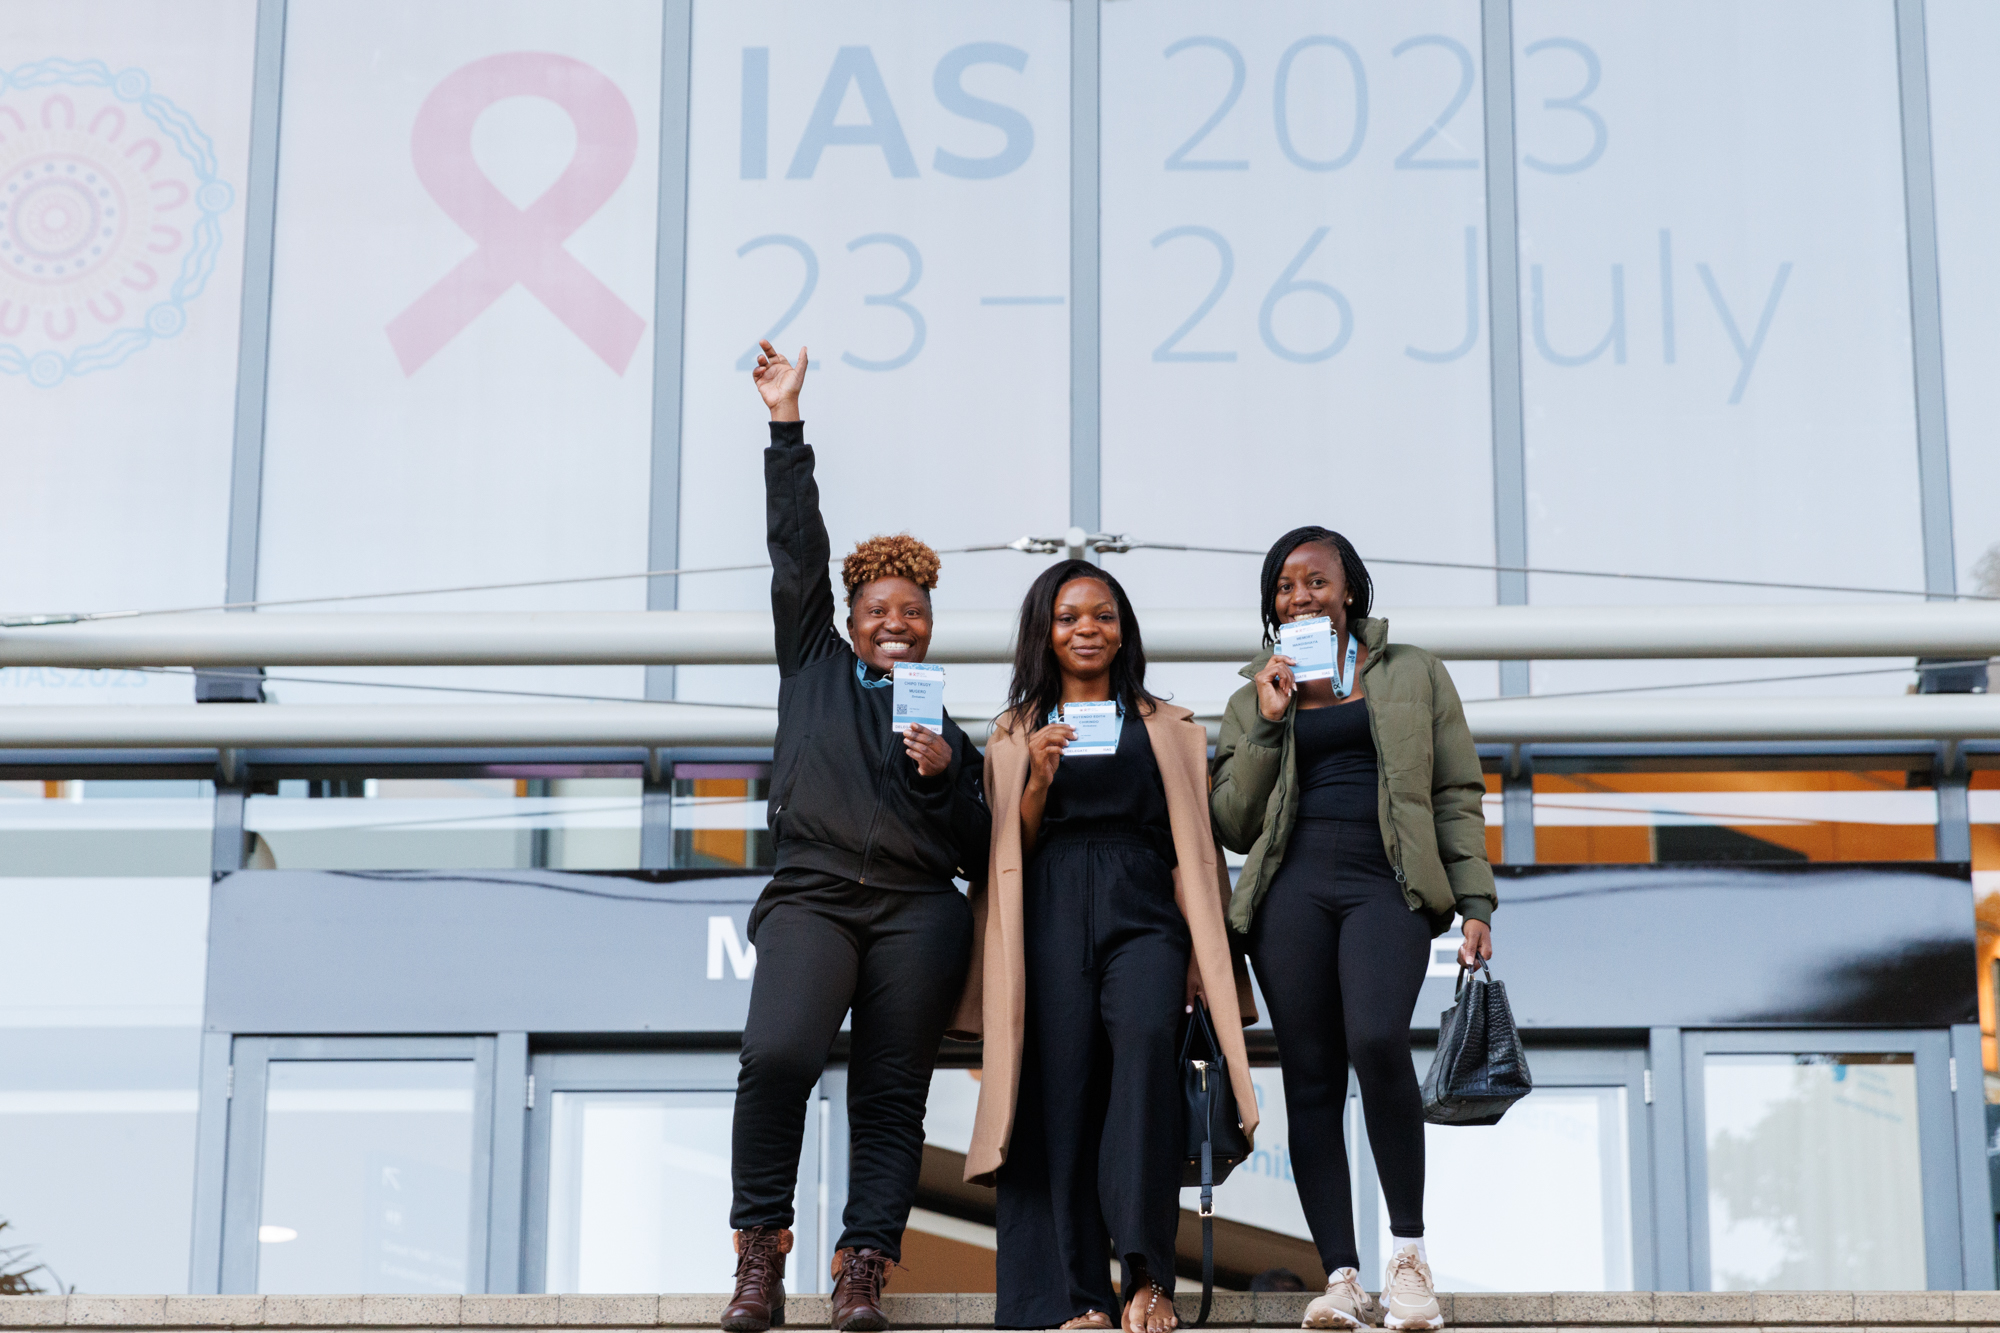 La doceava conferencia de la IAS sobre la ciencia del VIH se lleva a cabo en Brisbane, Australia. Destacan los avances en la prevención, el tratamiento y la investigación de la cura del VIH y contará con una serie de estudios que representan importantes avances en el tema.